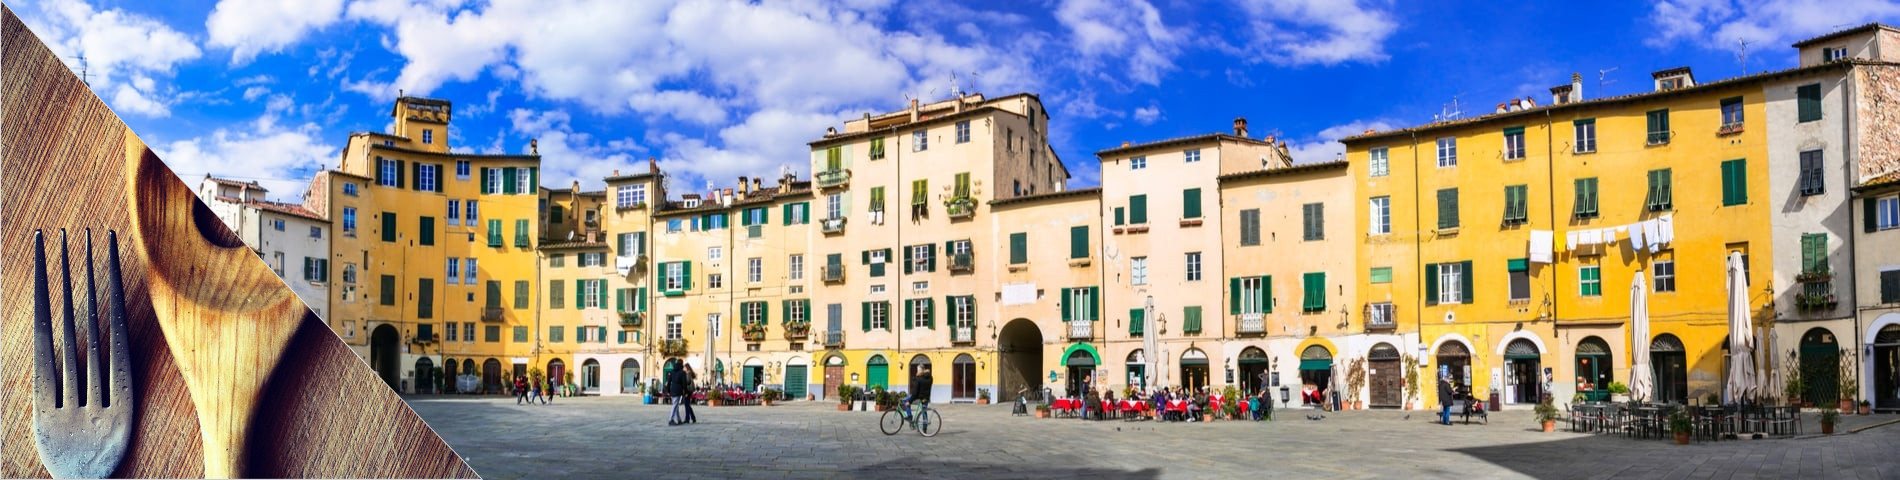 Lucca - Italia & ruoanlaitto